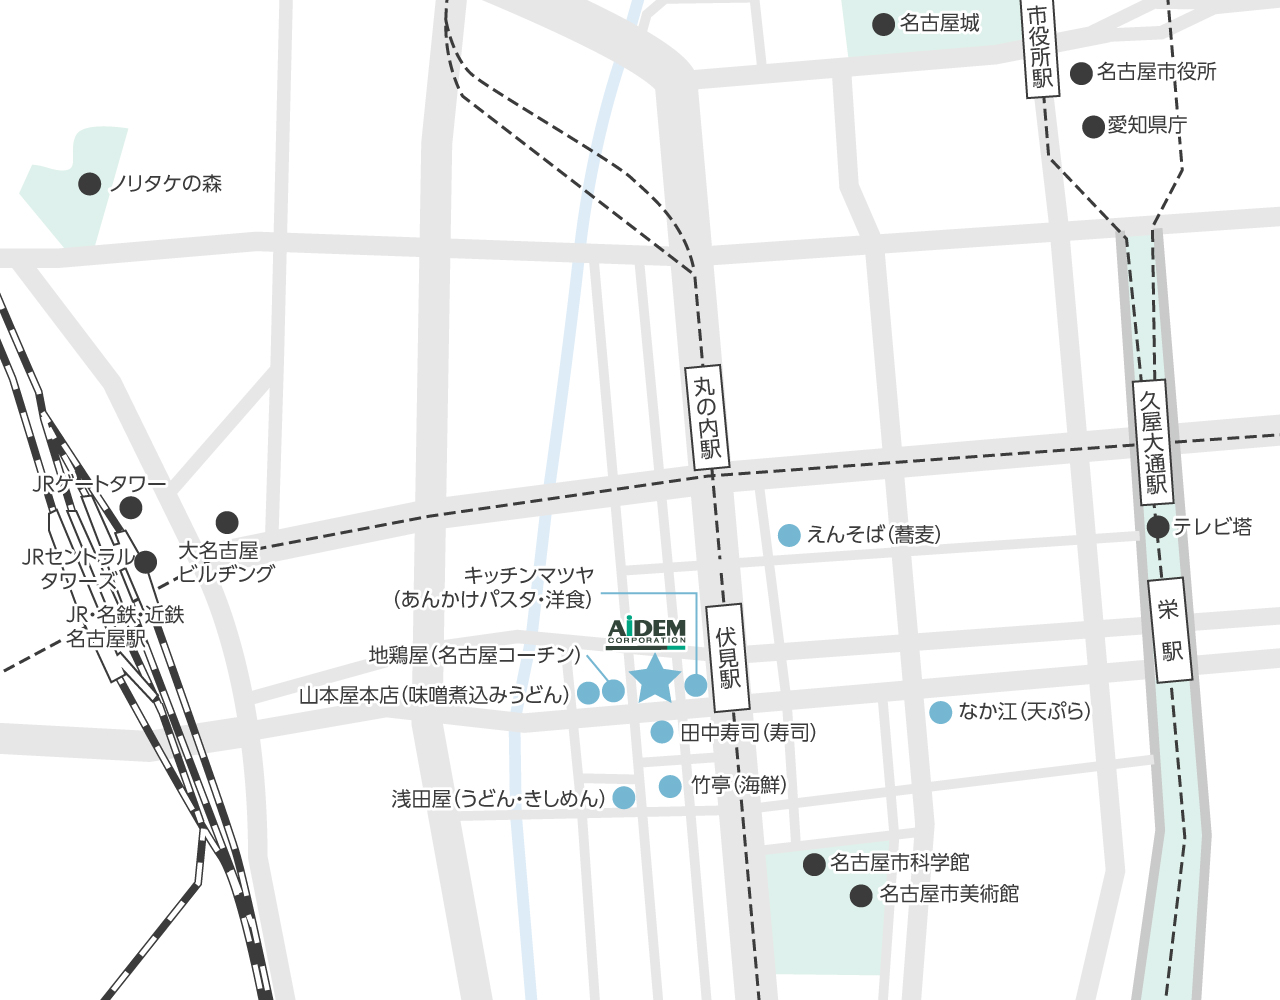 名古屋支社周辺の飲食店マップ